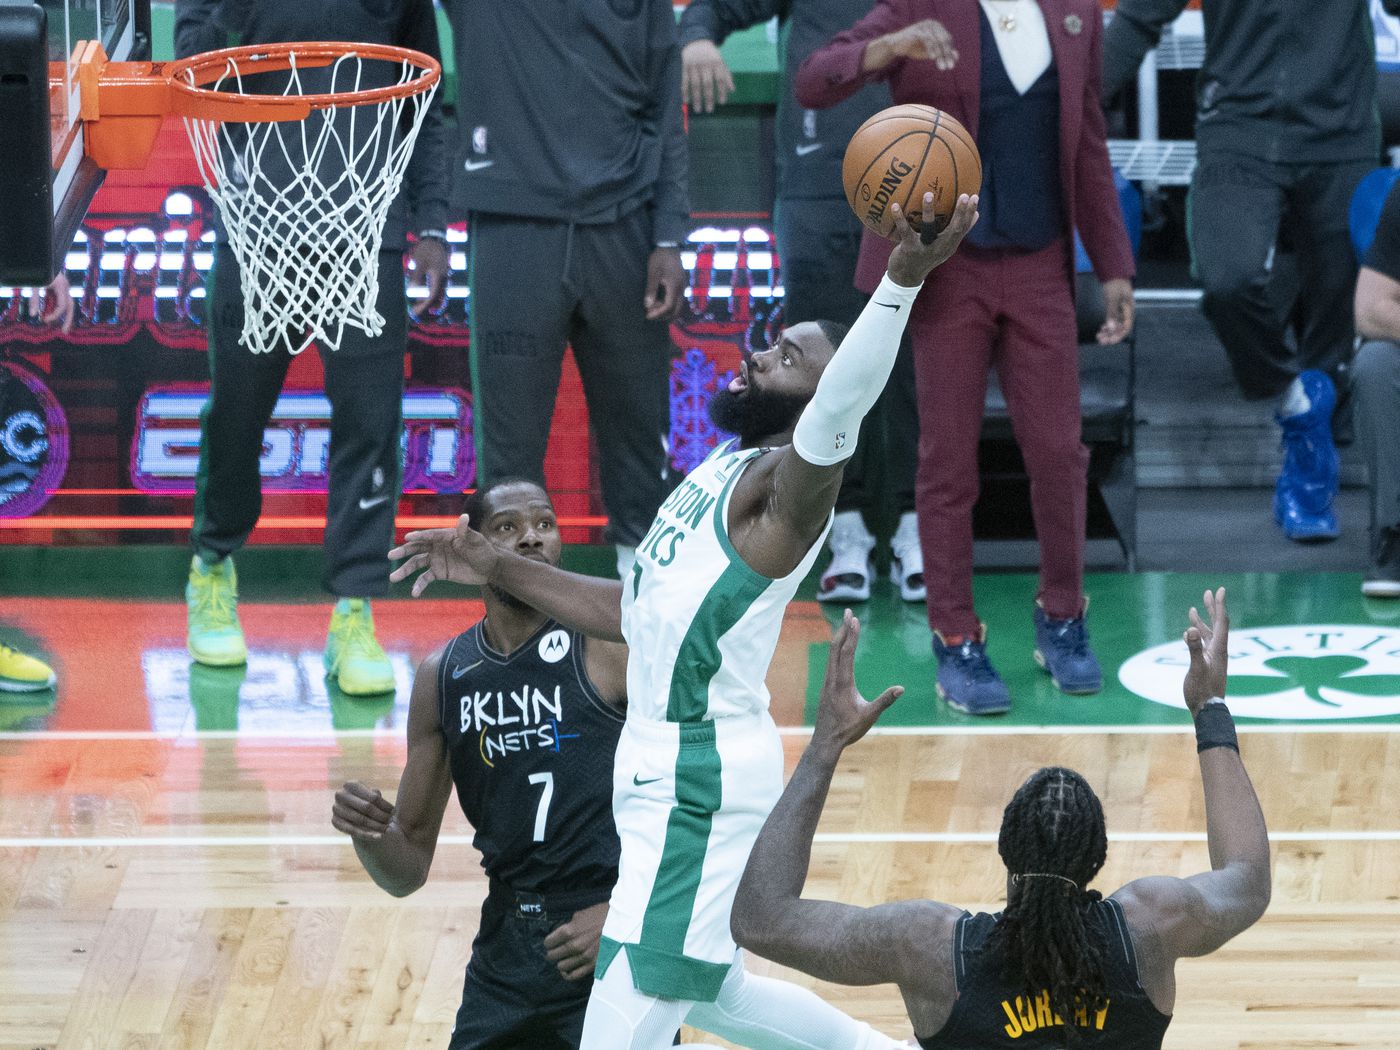 Nets vs. Celtics Game 1 score, takeaways: Brooklyn star trio burns Boston in second half en route to 1-0 lead